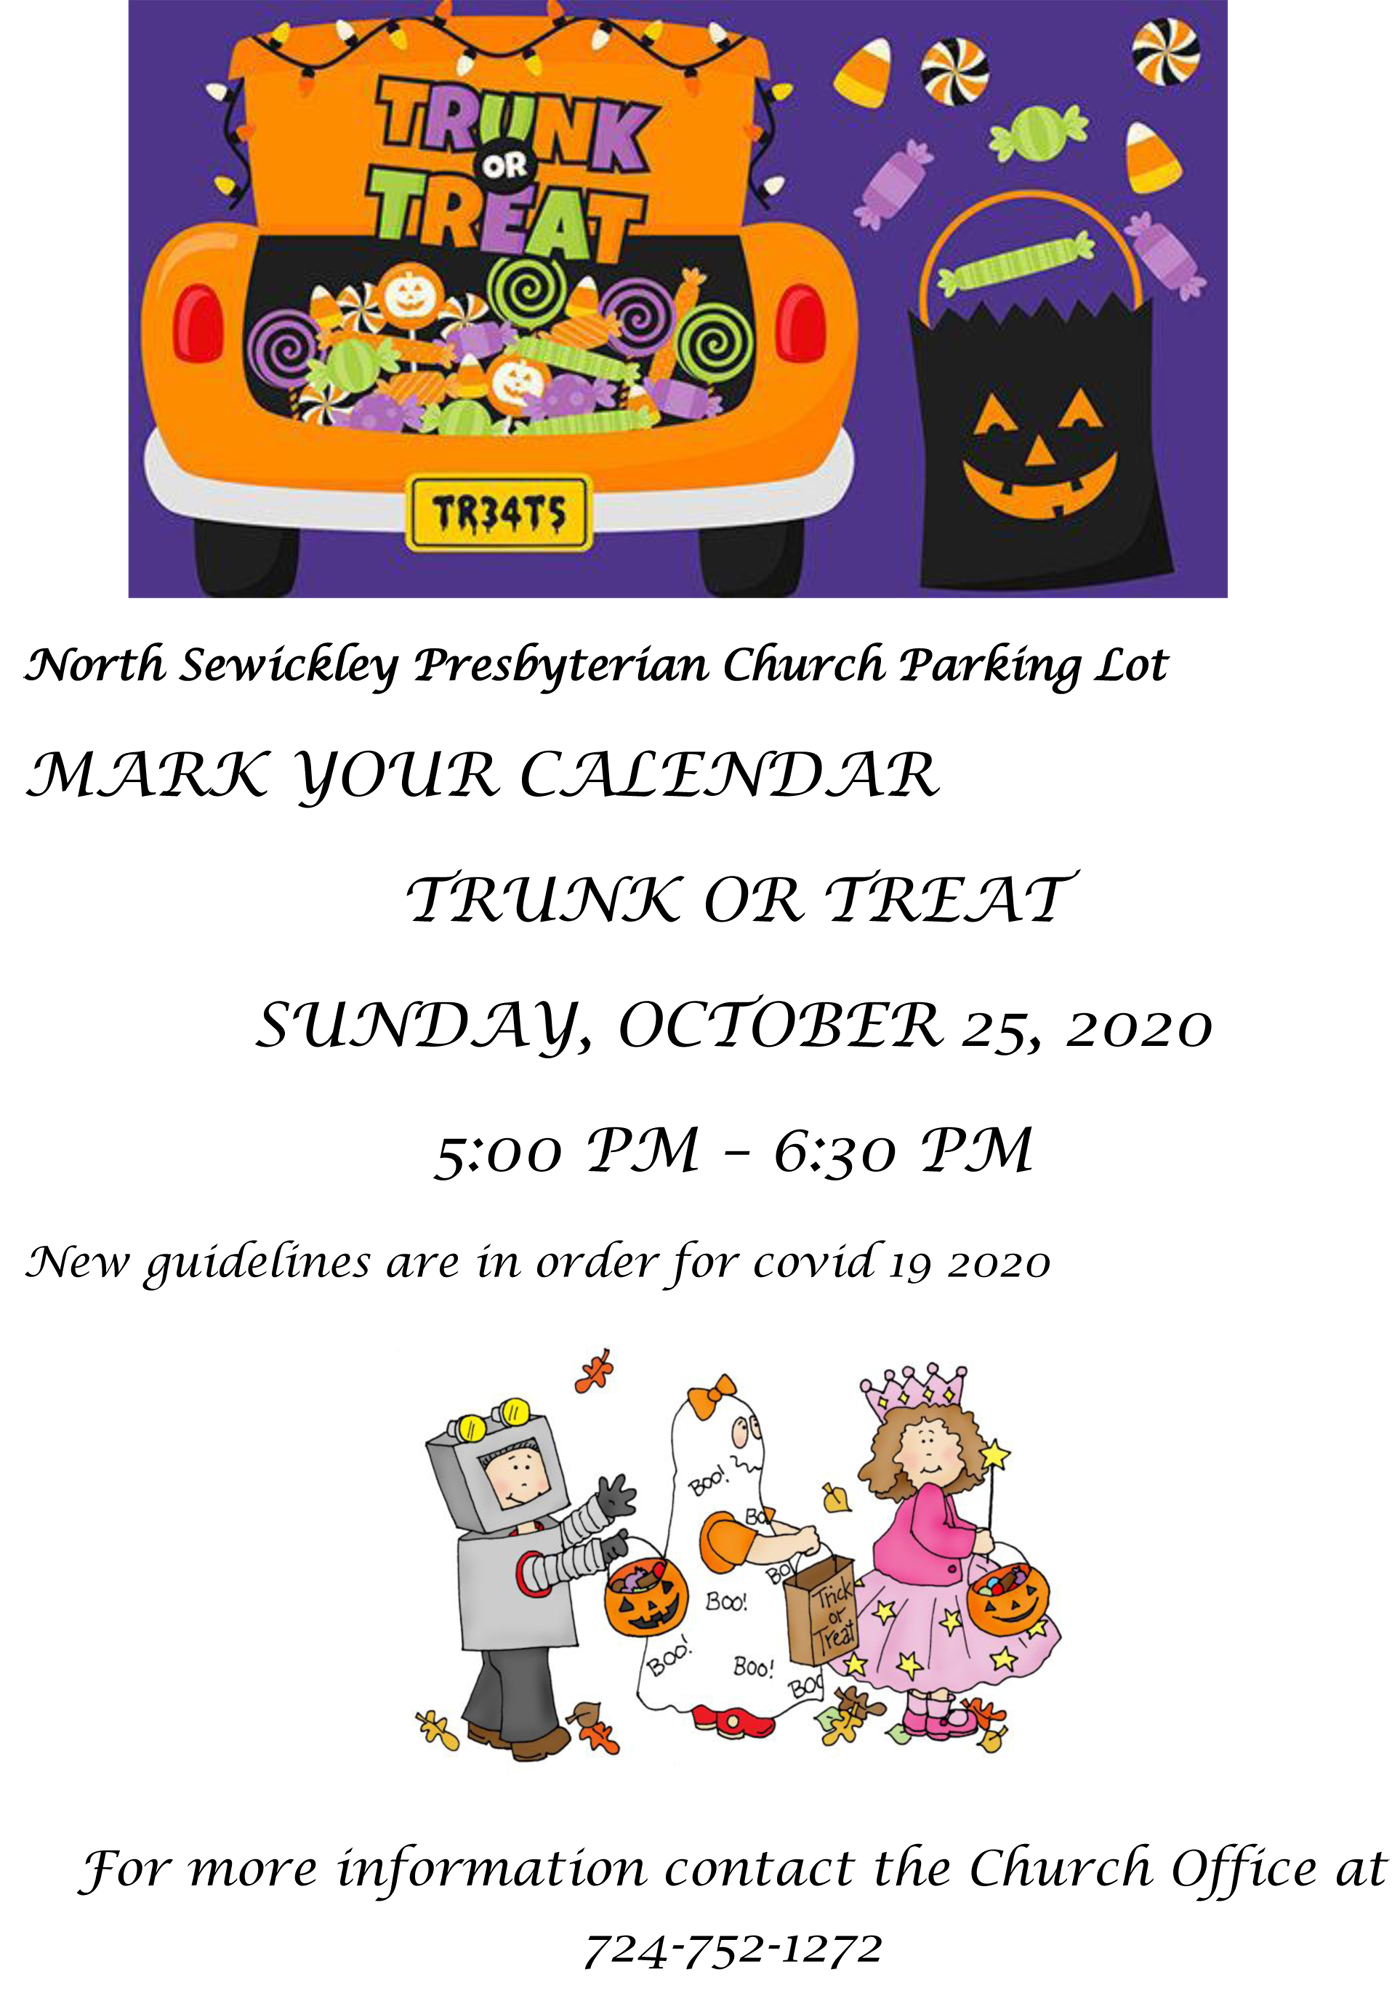 North Sewickley Presbyterian Church Trunk or Treat Ellwood City, PA news